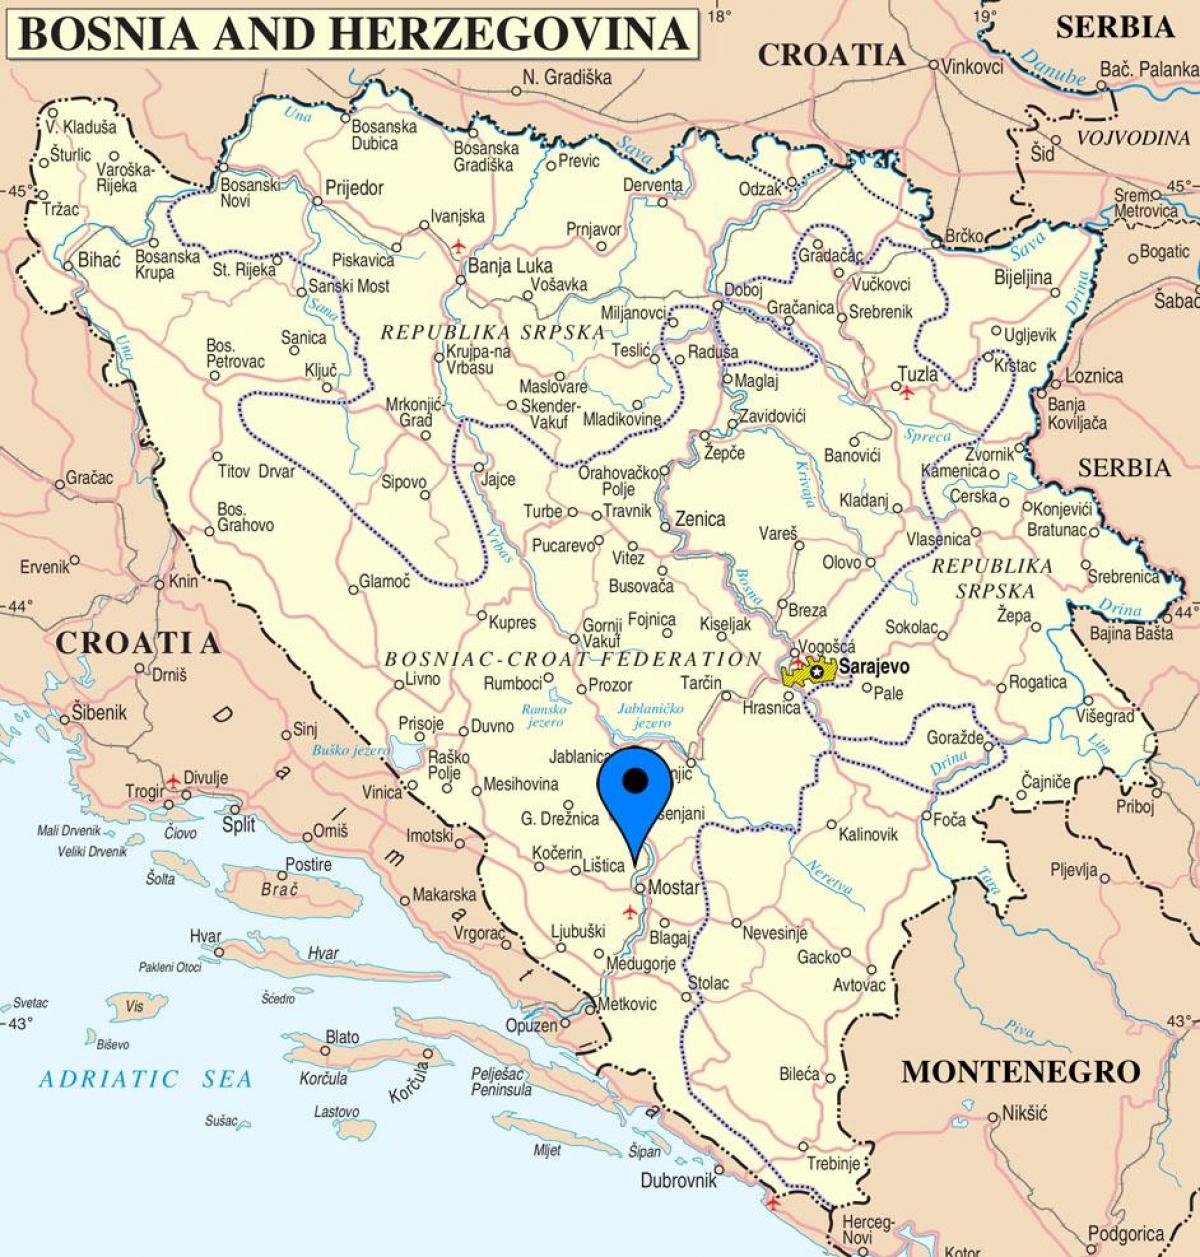 karte Bosnija un Hercegovina, mostar